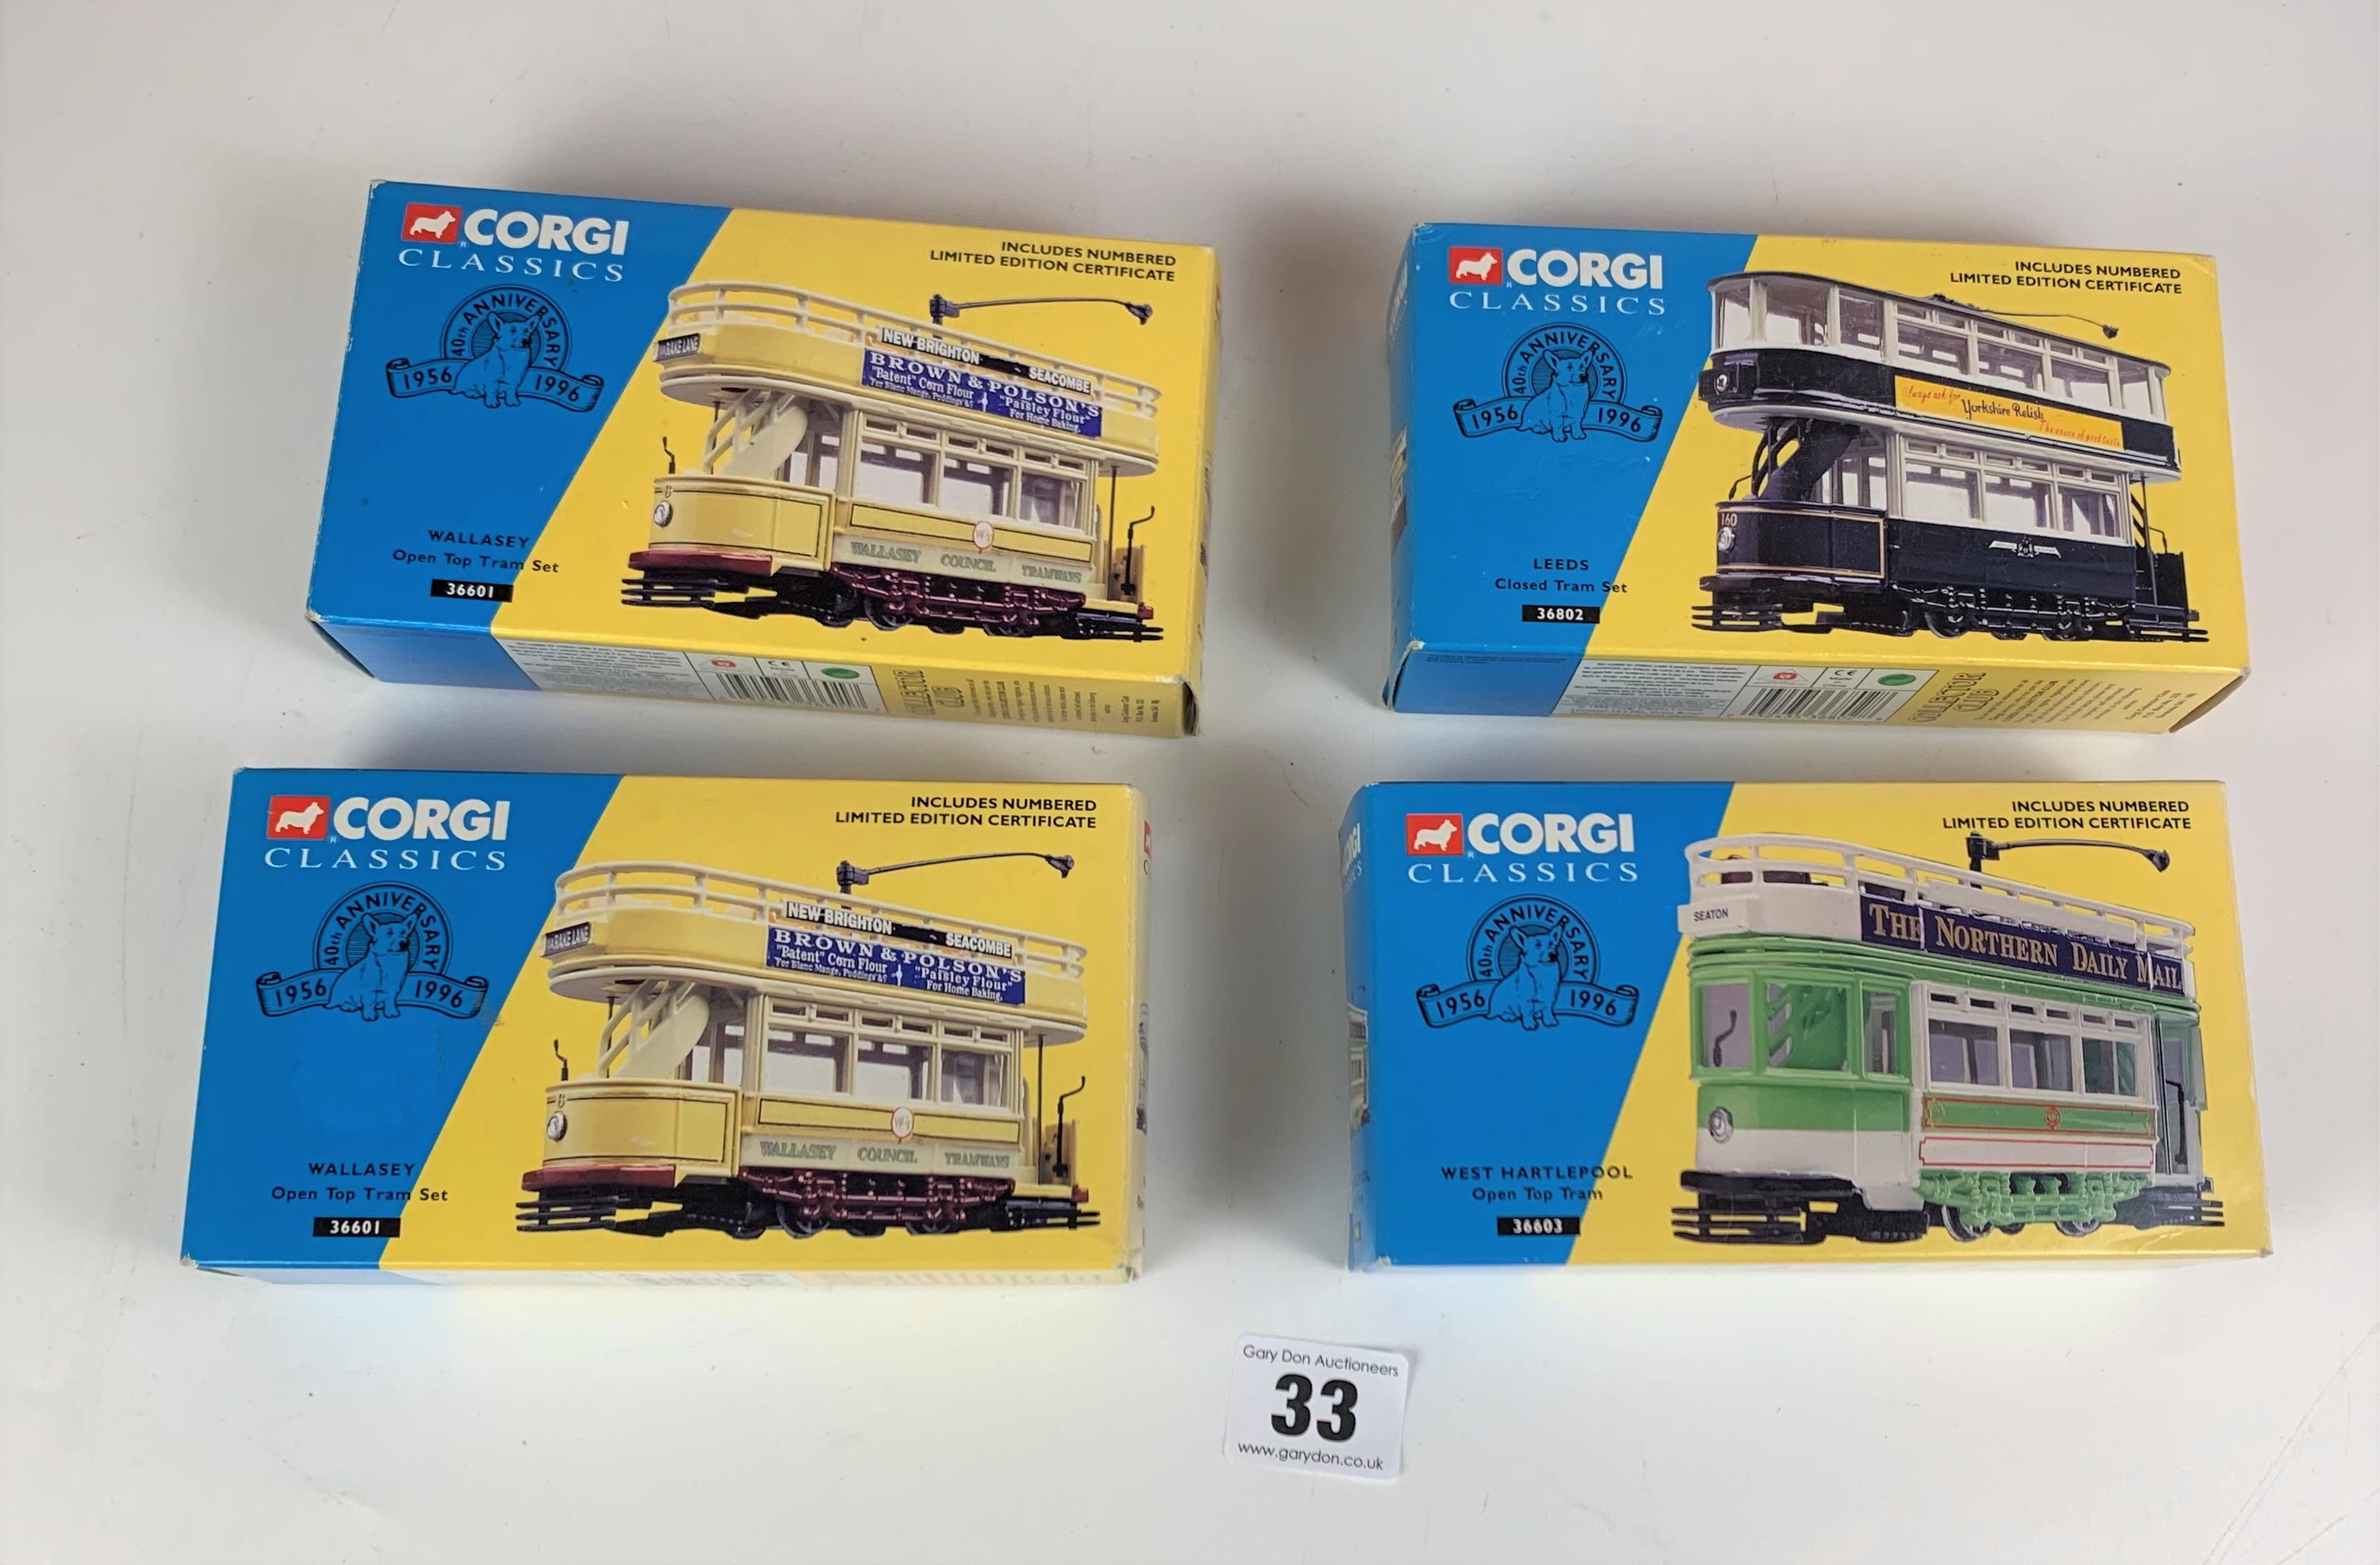 4 boxed Corgi Classics- 2 x Wallasey Open Top Tram Set 36601, Leeds Closed Tram Set 36802, West